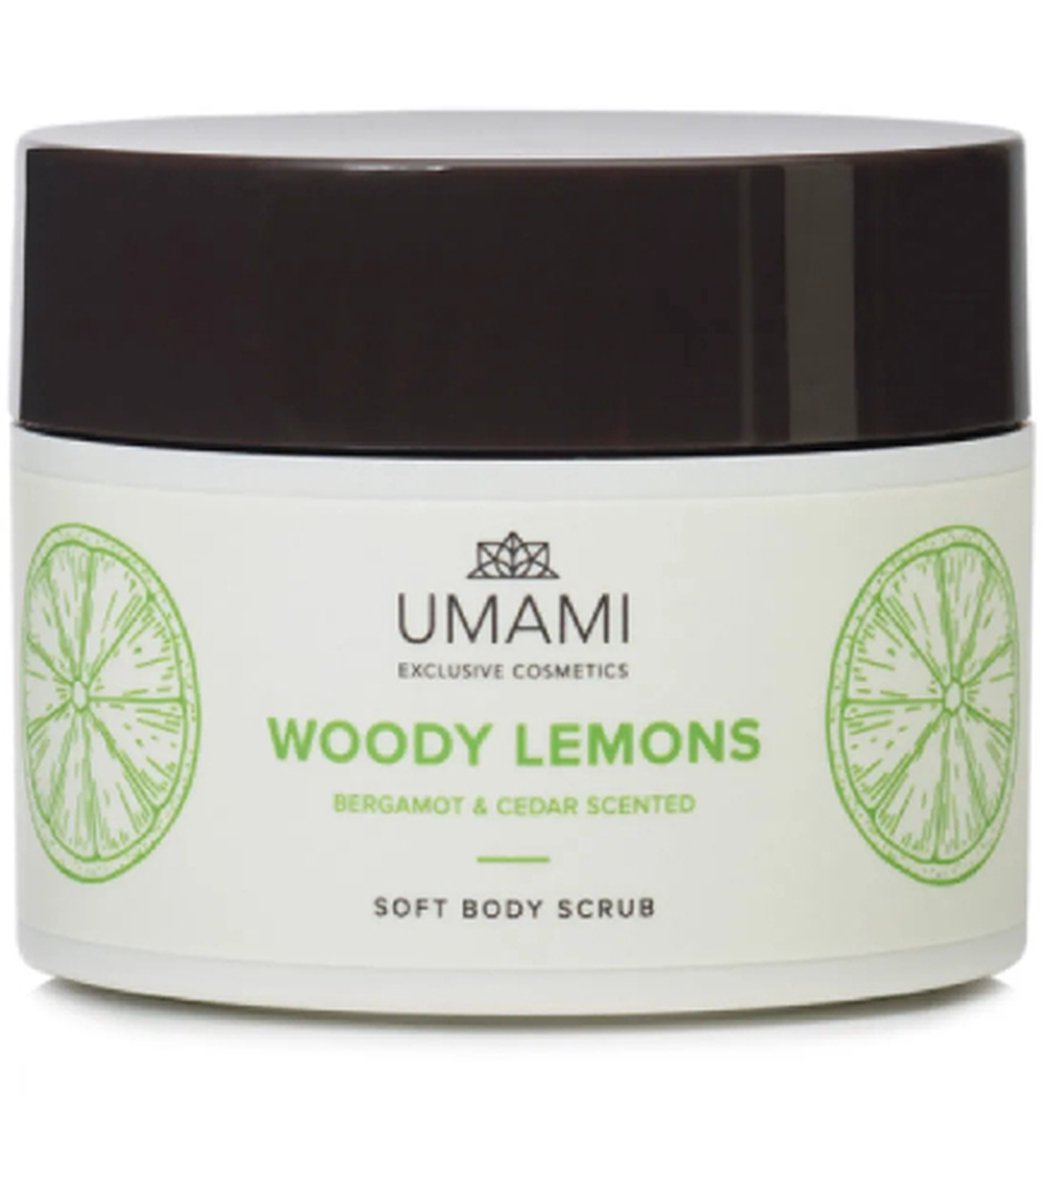 Umami - Woody Lemons Soft Body Scrub 250ml